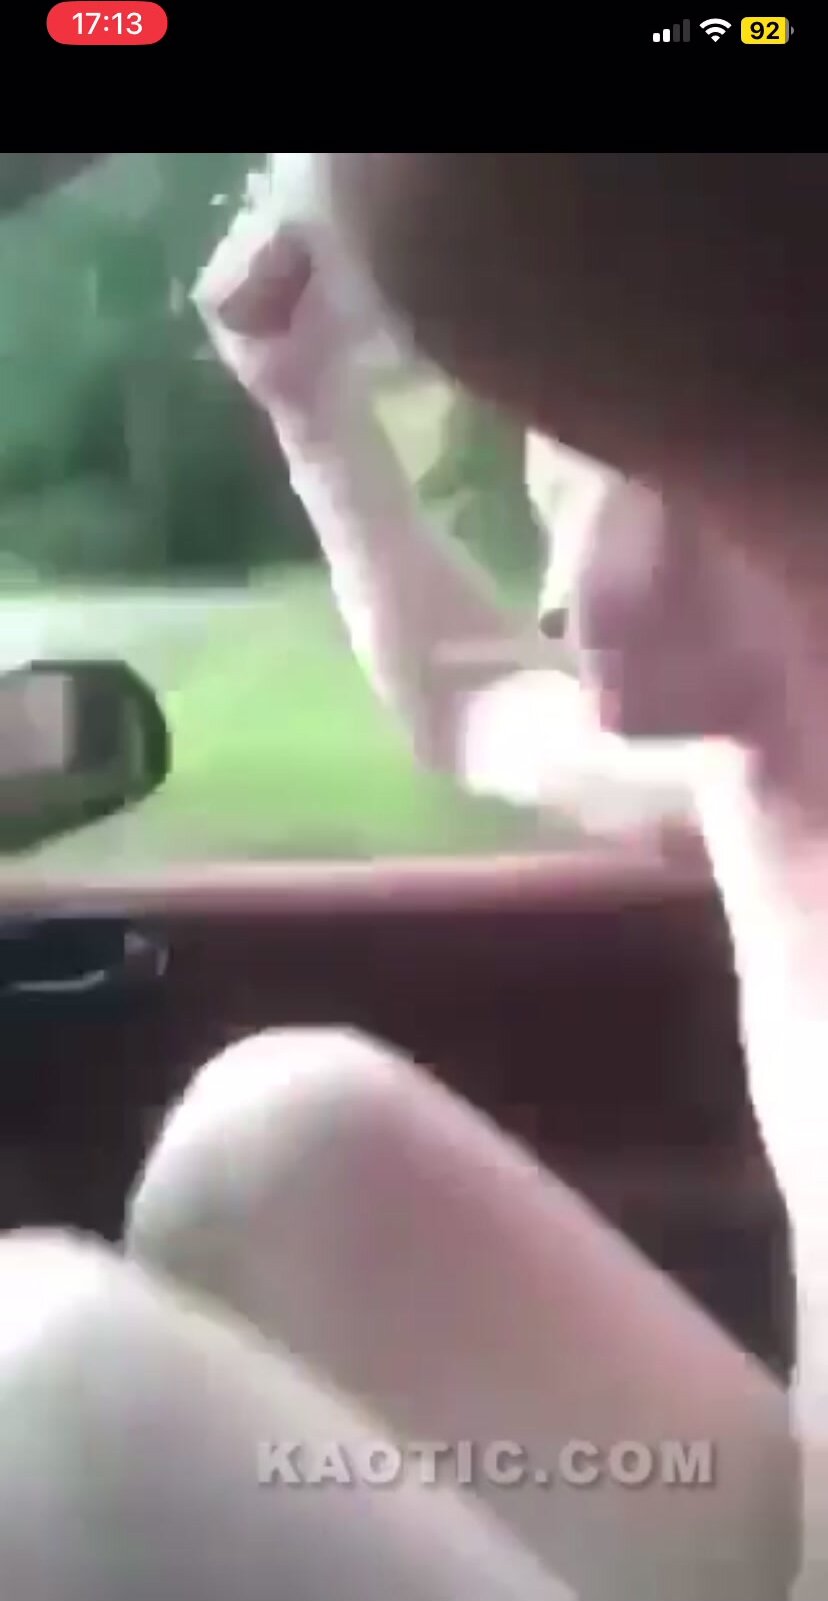 Naked Estonian falls naked out of moving car